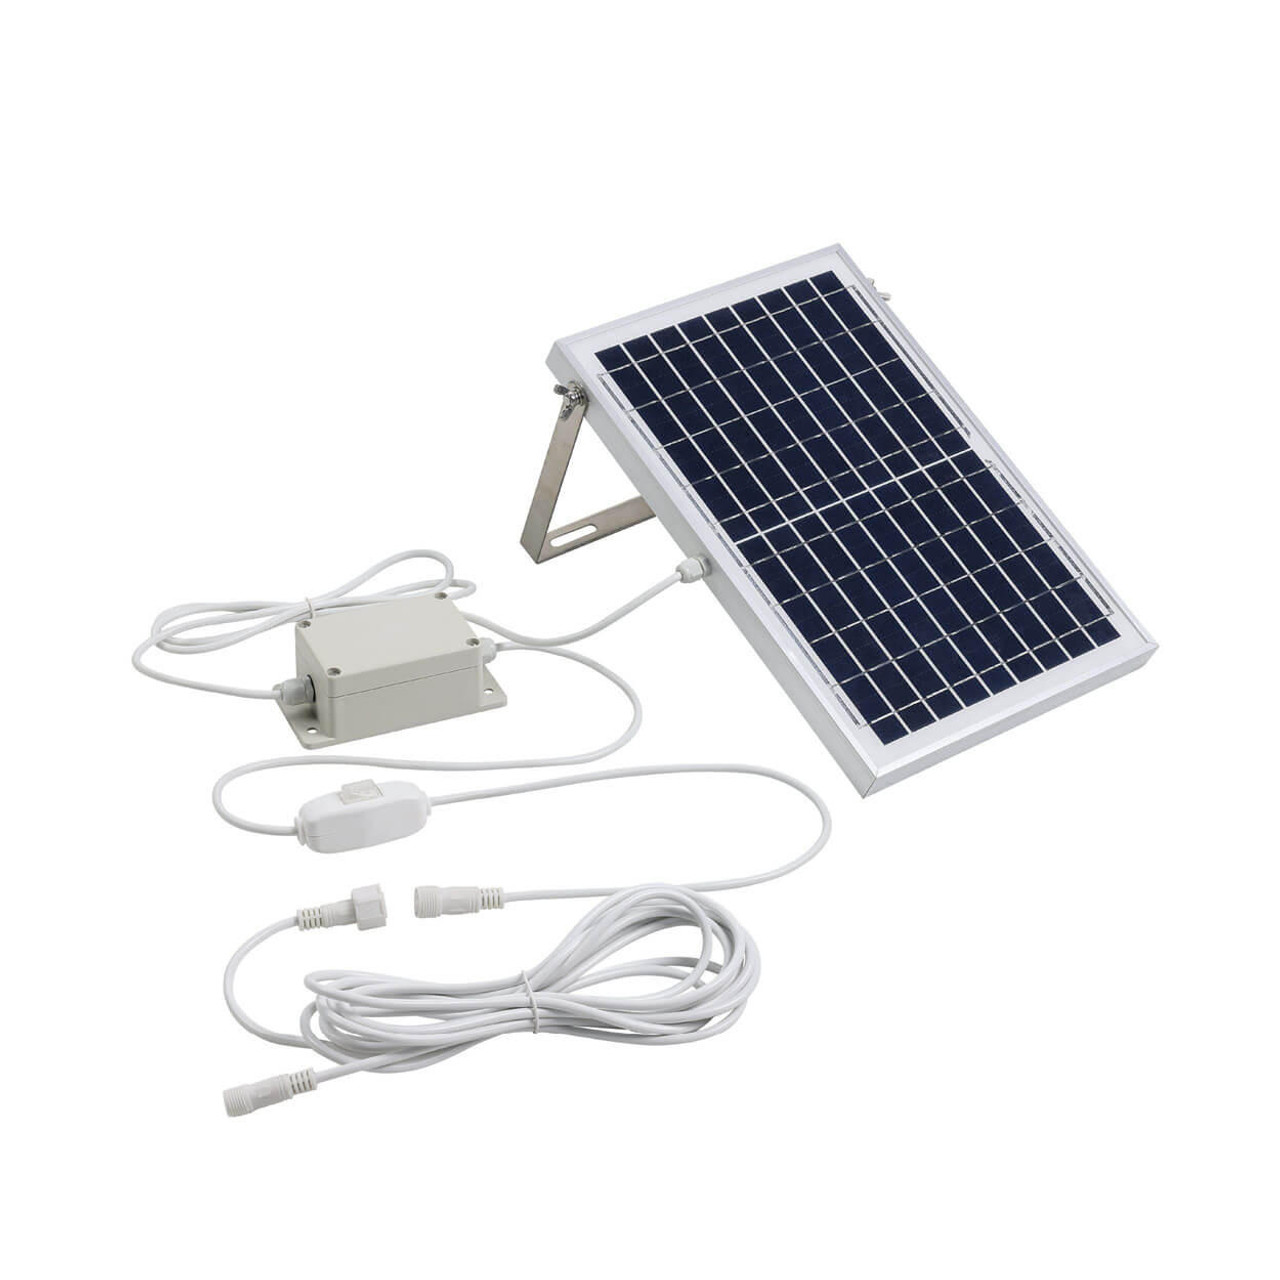  Eglo Solar Festoon 10 Light LED Kit White & Warm White 205716N 